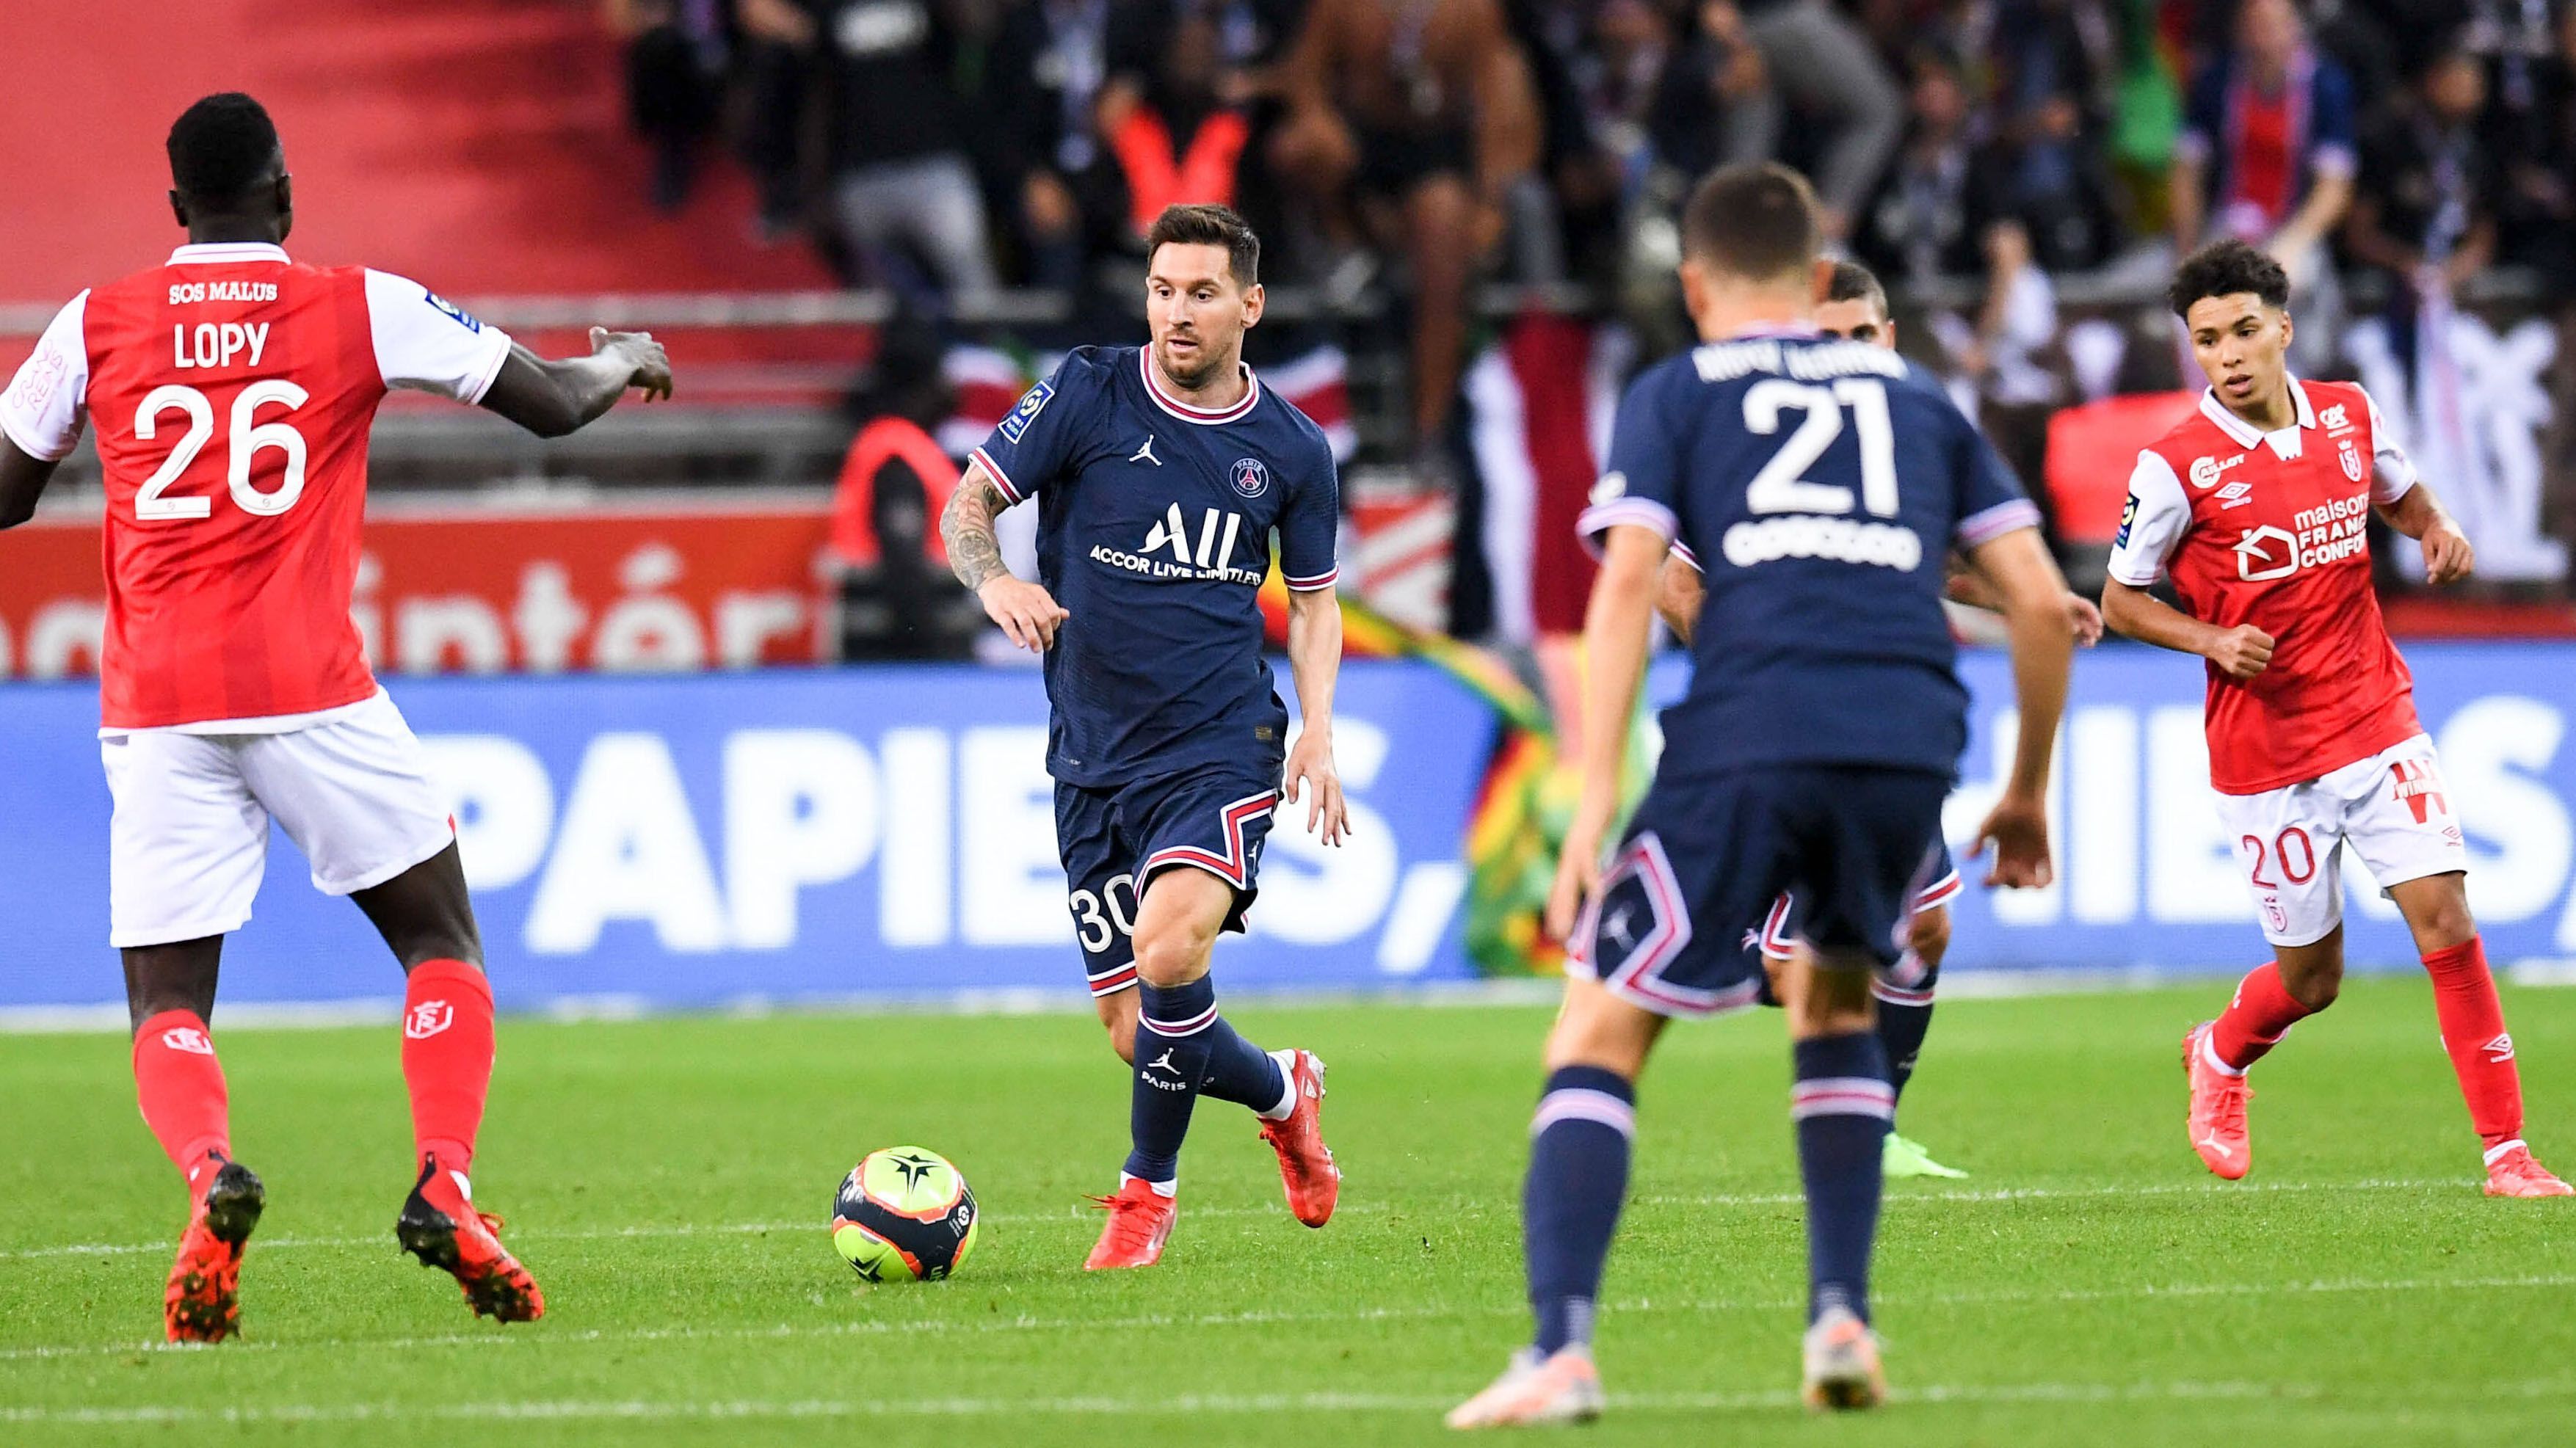 
                <strong>Erster Auftritt in der Ligue 1: Lionel Messi debütiert für Paris St.-Germain</strong><br>
                Der argentinische Superstar wird von seinen Mitspielern direkt gesucht, kann der Partie seinen Stempel allerdings nicht mehr aufdrücken. Die berühmte Messi-Aura umgibt den 34-Jährigen dennoch, von den Tribünen wird jede noch so kleine Aktion bejubelt und mit wohlwollenden Tönen der Zustimmung bejubelt. 
              